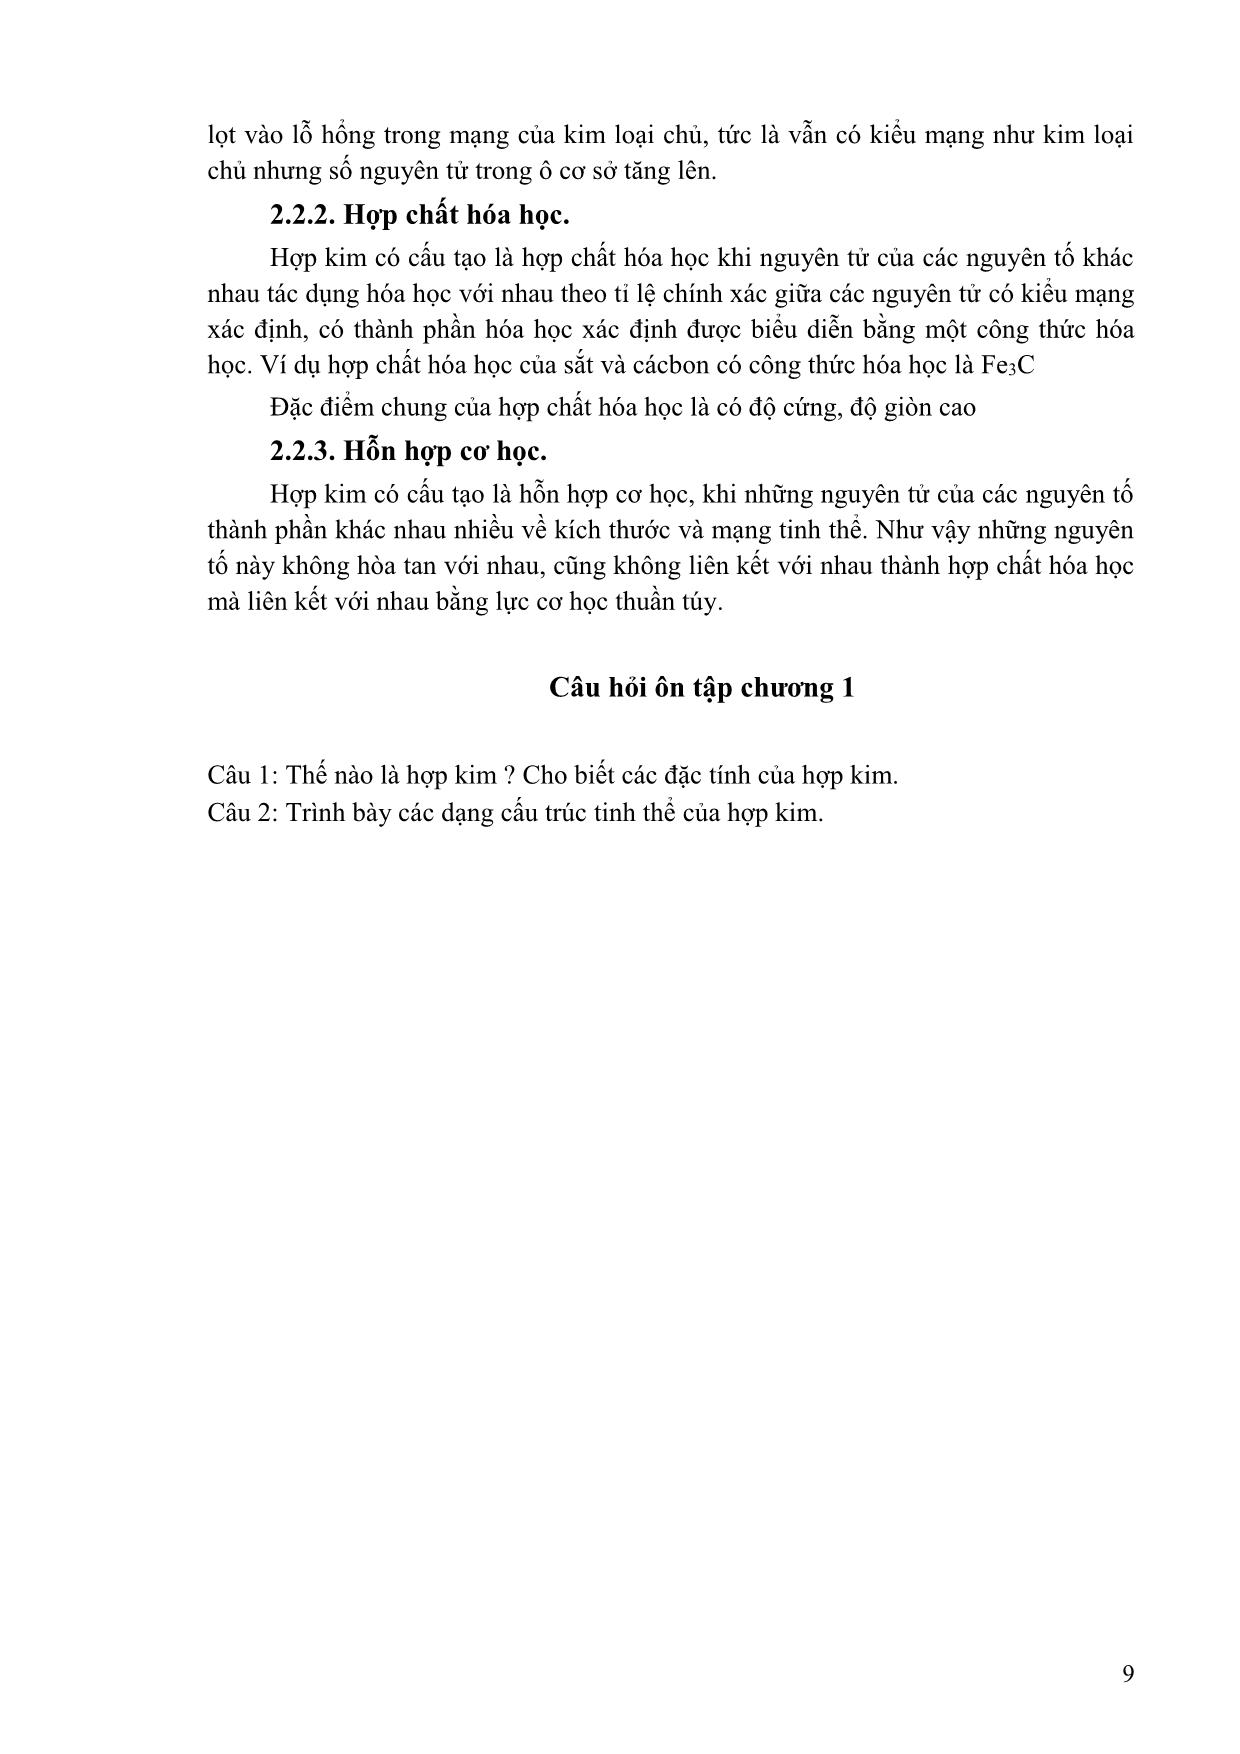 Giáo trình Vật liệu học trang 7